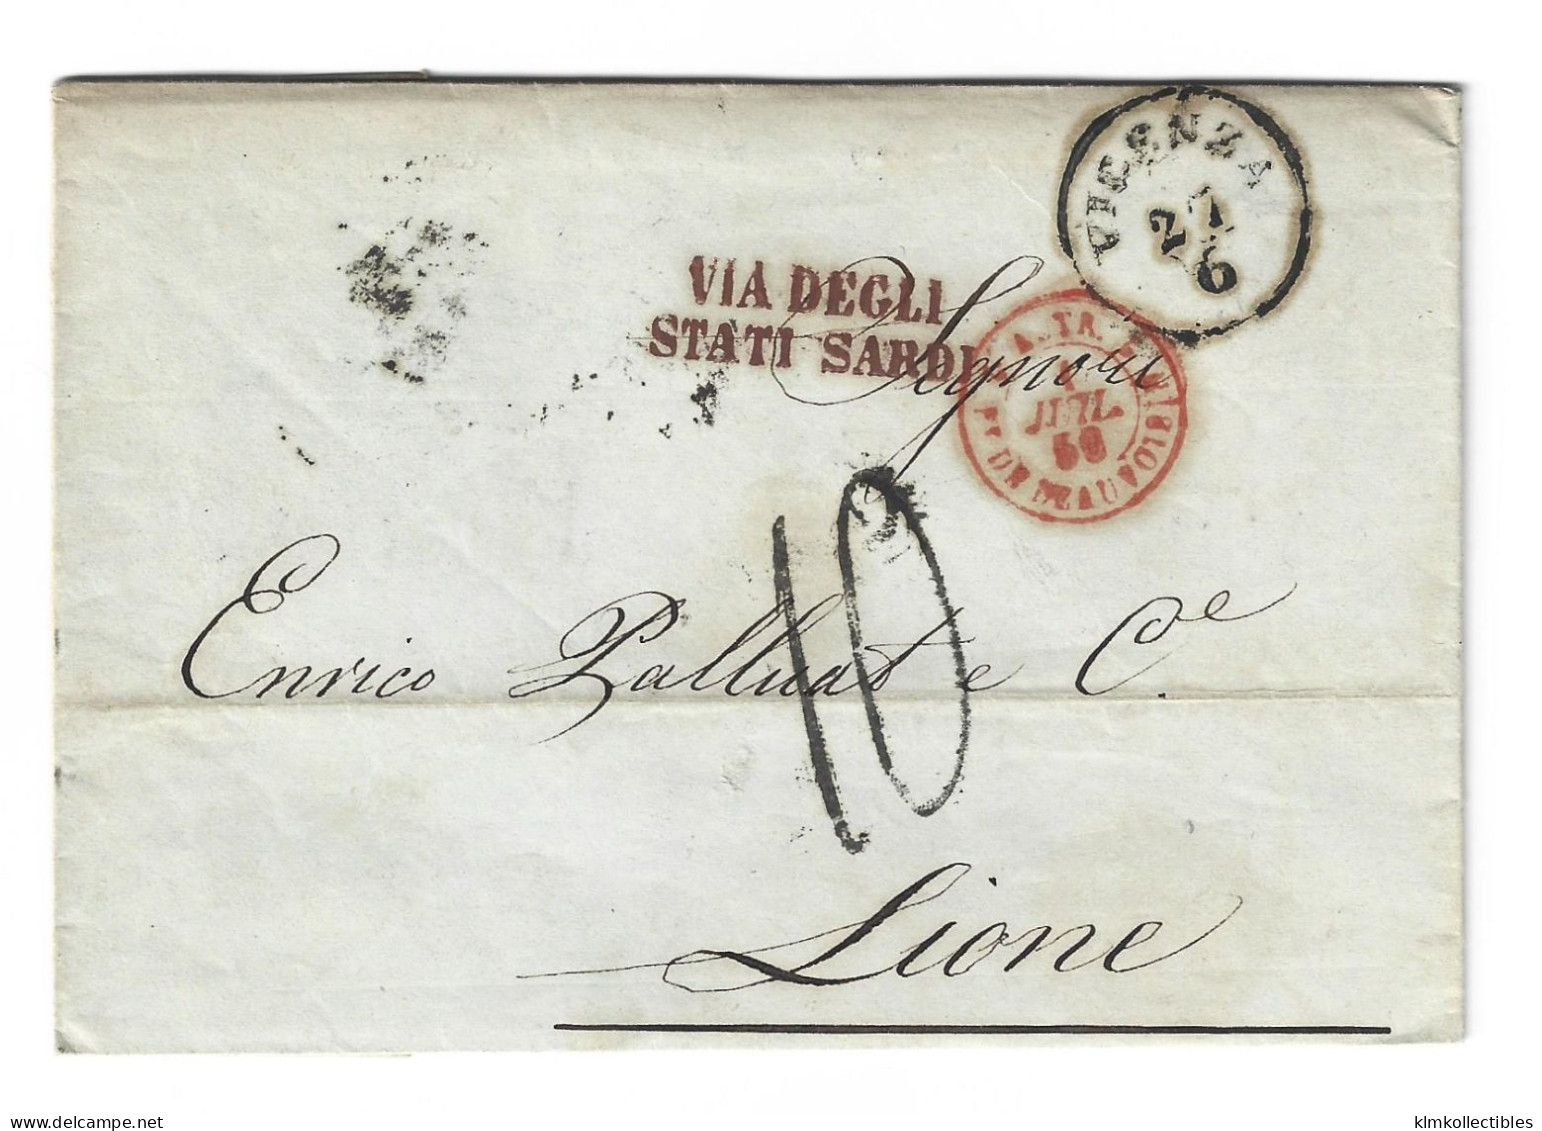 ITALY ITALIA - 1856 PIROSCAFI STAMPLESS LETTER TO FRANCE - VICENZA TO LYON - VIA DEGLI STATI SARDI CACHET - Ohne Zuordnung